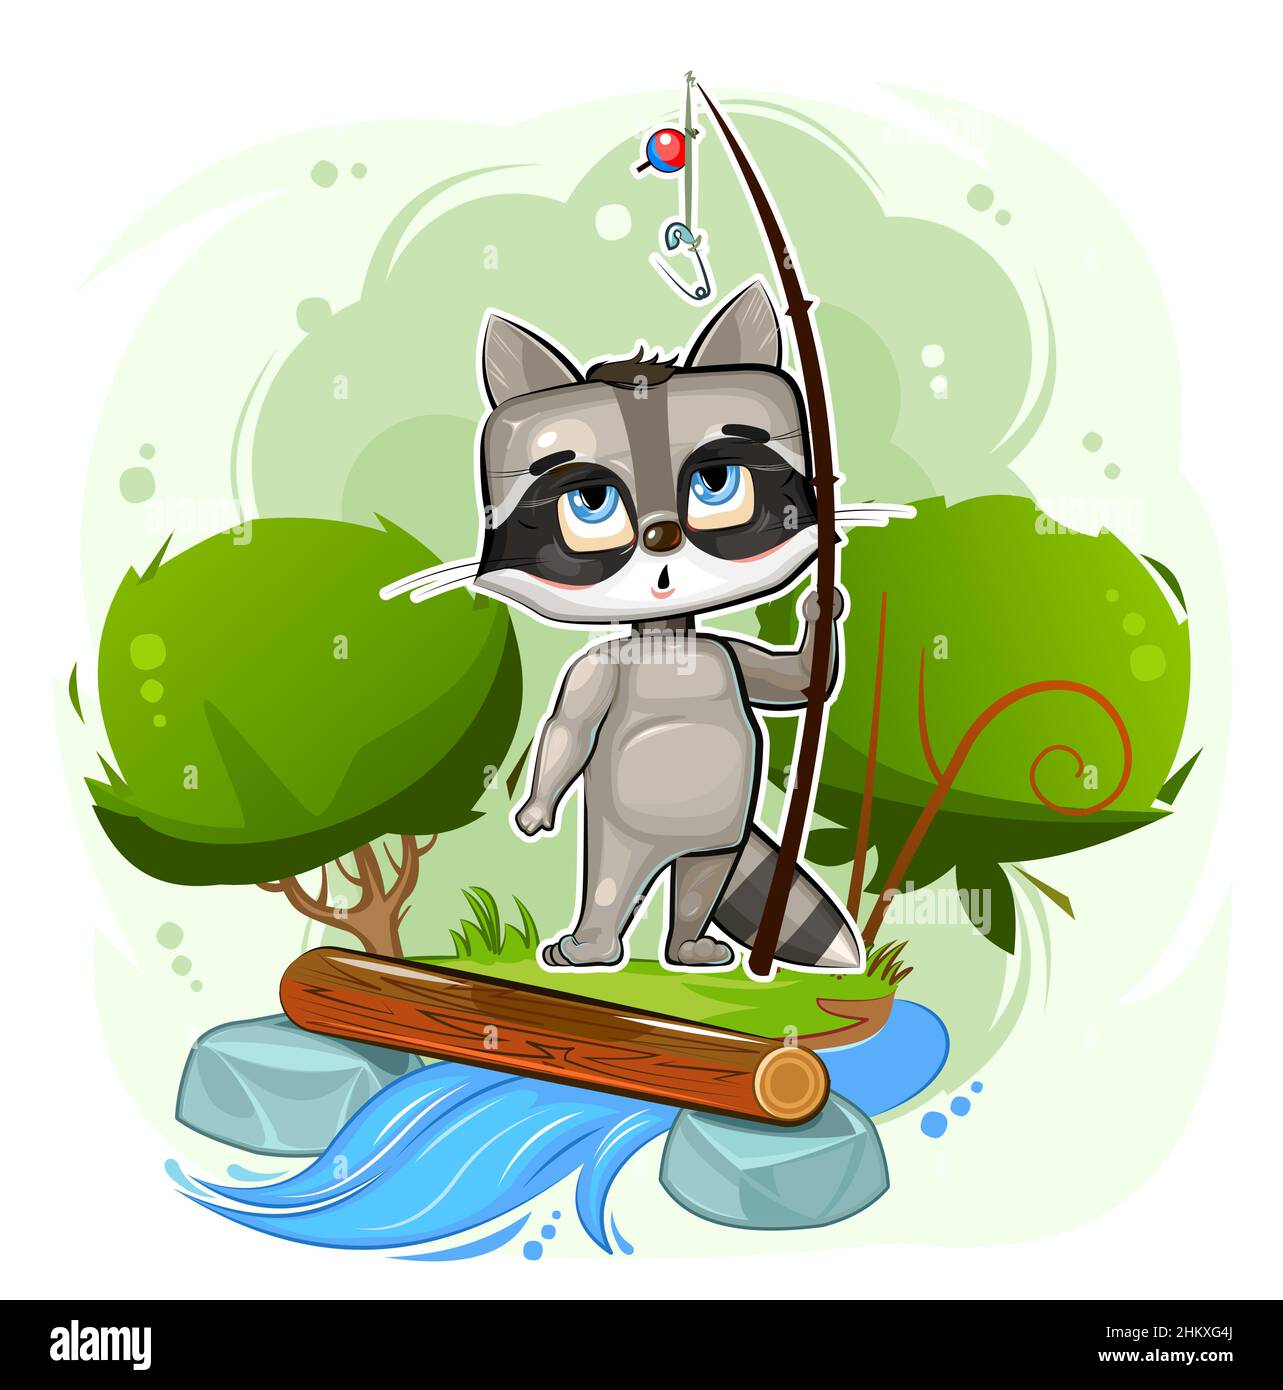 Lustige niedliche Baby Raccoon fischt am Ufer des Baches. Fluss. Es wird kein Fisch gefangen. Naives Tierkind. Cartoon-Stil. Illustration für Kinder Stock Vektor